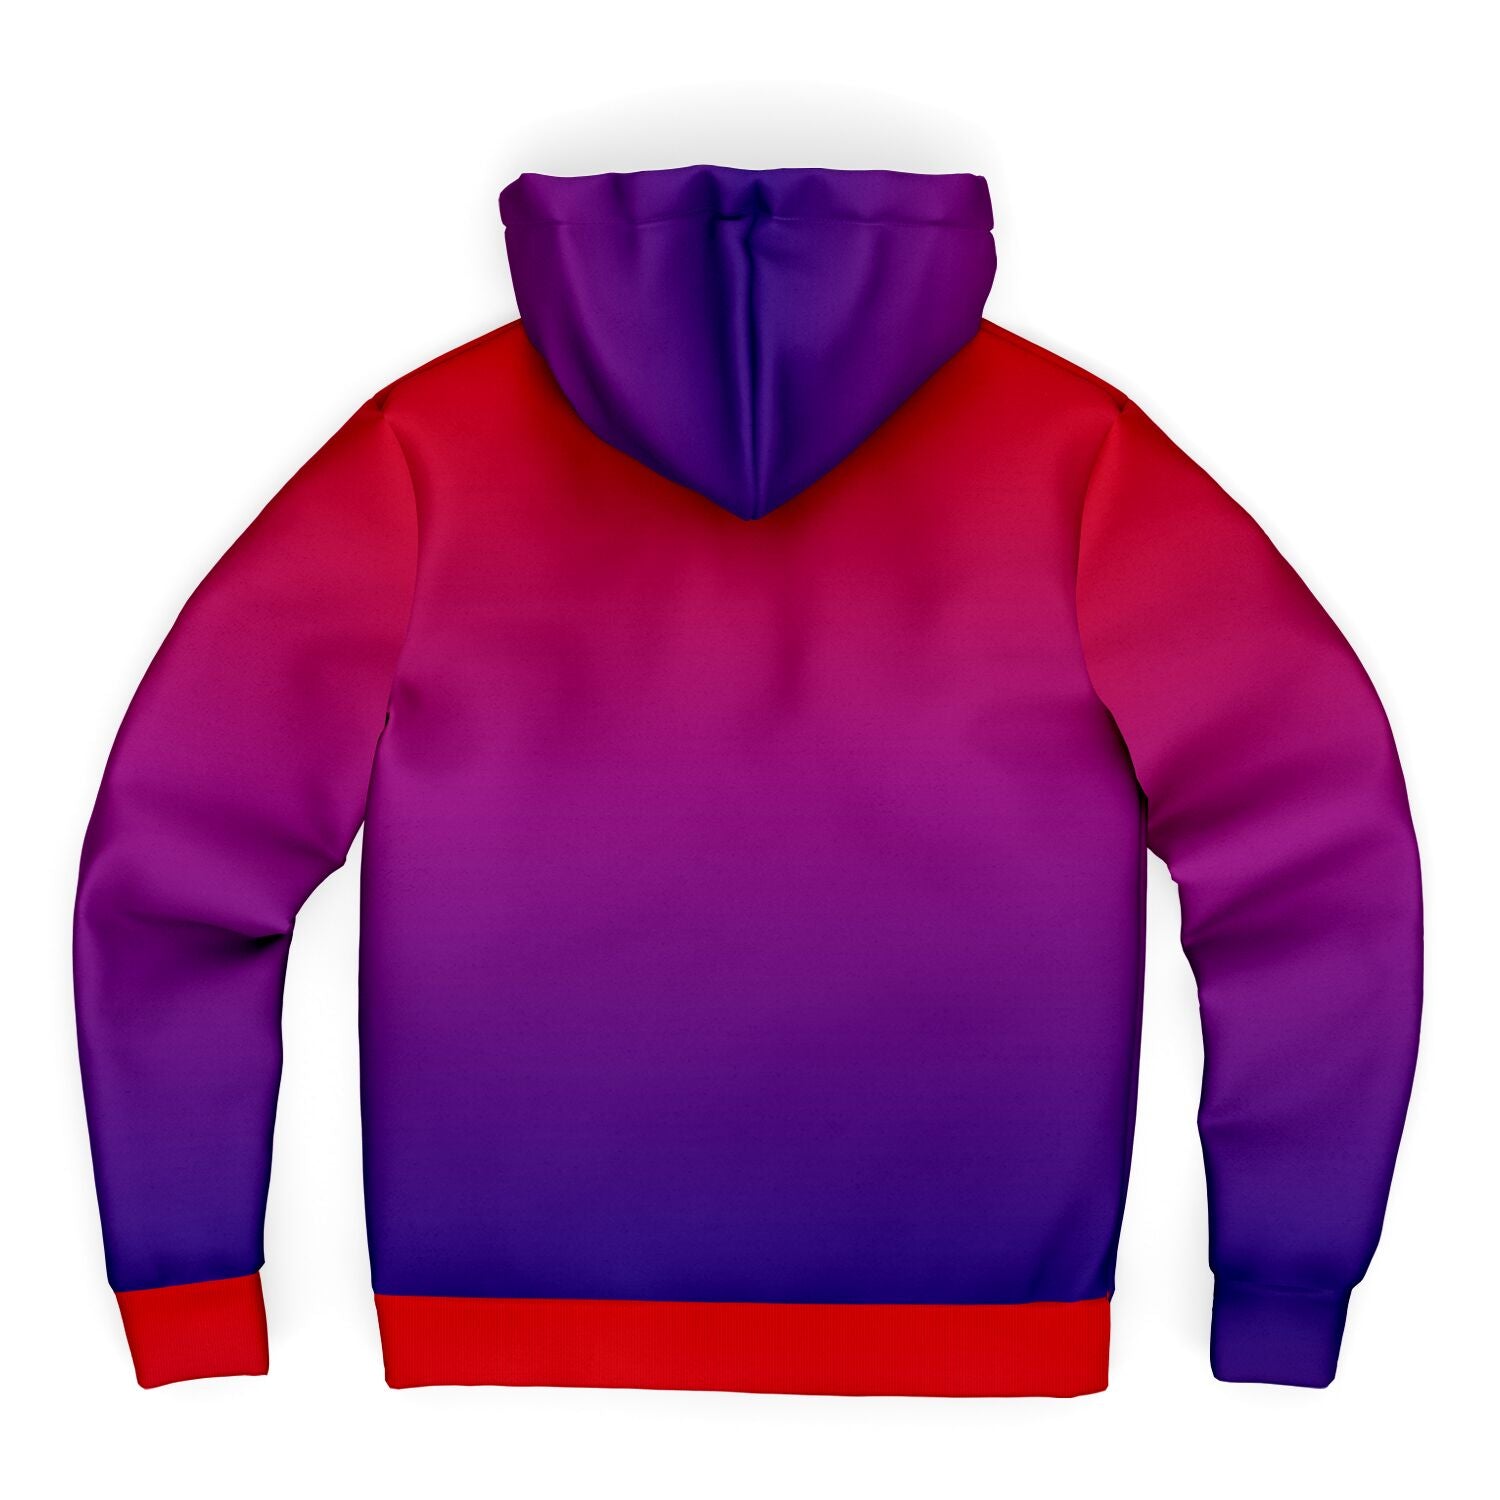 Red blue fade Microfleece Zip hoodie, Rave Hoodie, Festival Hoodie